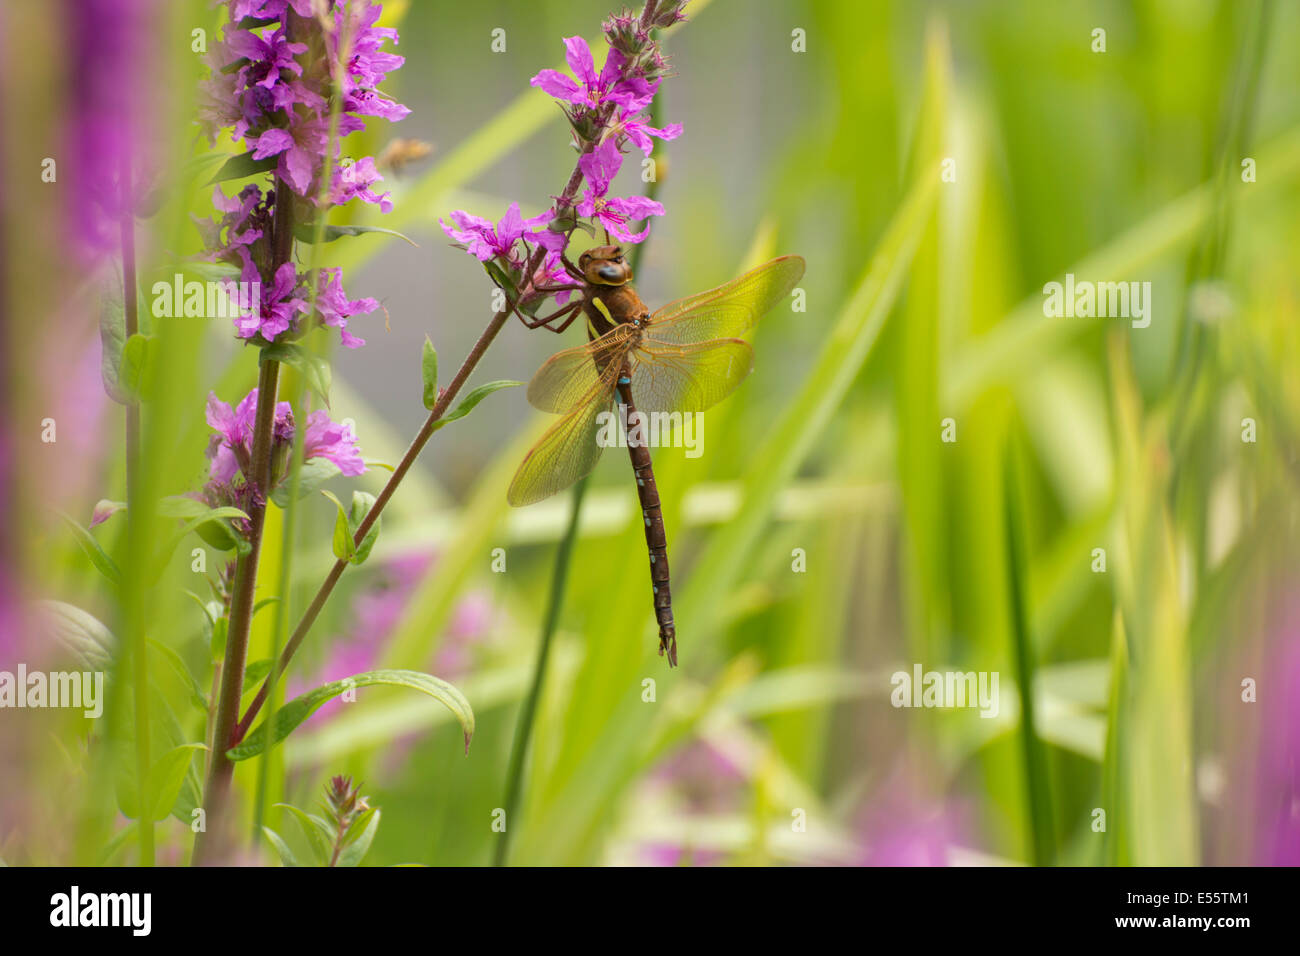 Un marrón Hawker dragonfly, Aeshna grandis, descansando sobre el tallo de una flor en el RSPB Fairburn Ings reserva natural. Foto de stock